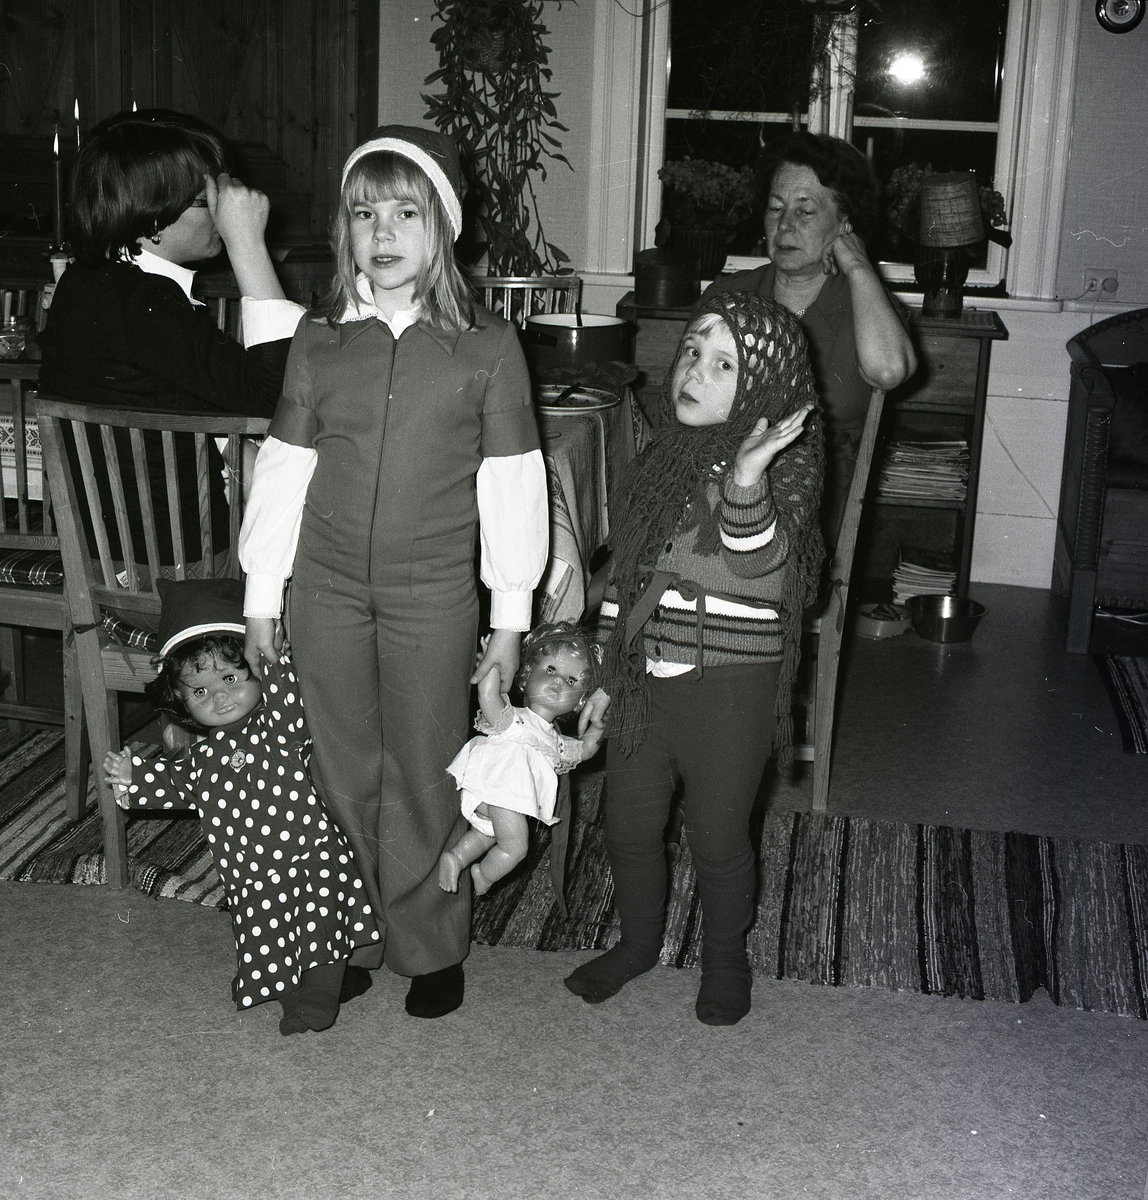 Kvinnor från flera generationers är samlade i ett rum. De äldre sitter vid bordet och samtalar med de yngre leker med två dockor i förgrunden. Flickorna är utklädda med luva och huvudduk när det fotograferas 1978 av Hilding Mickelsson.